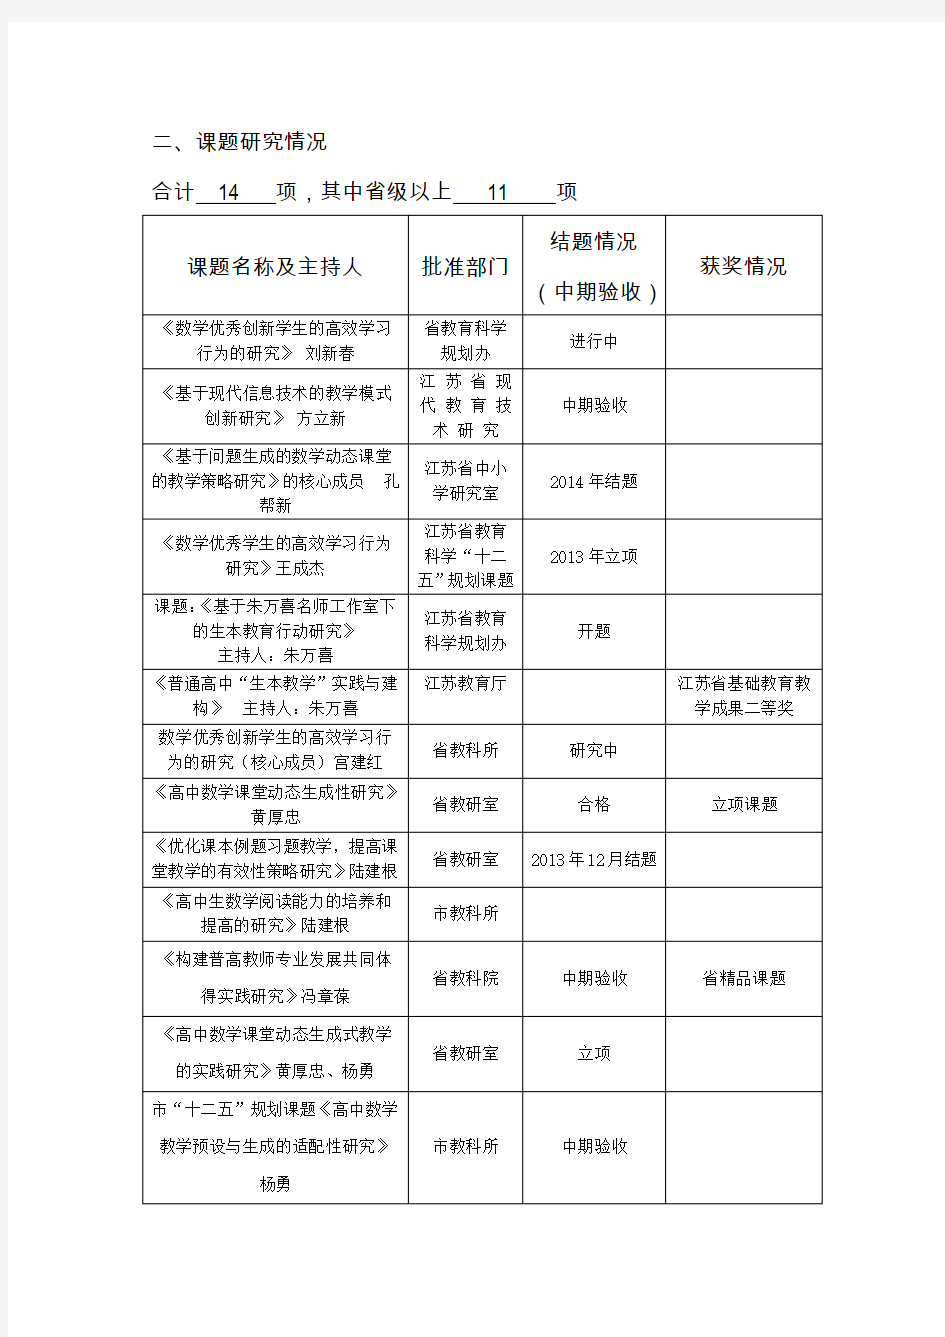 扬州市中小学名师工作室年终考核表